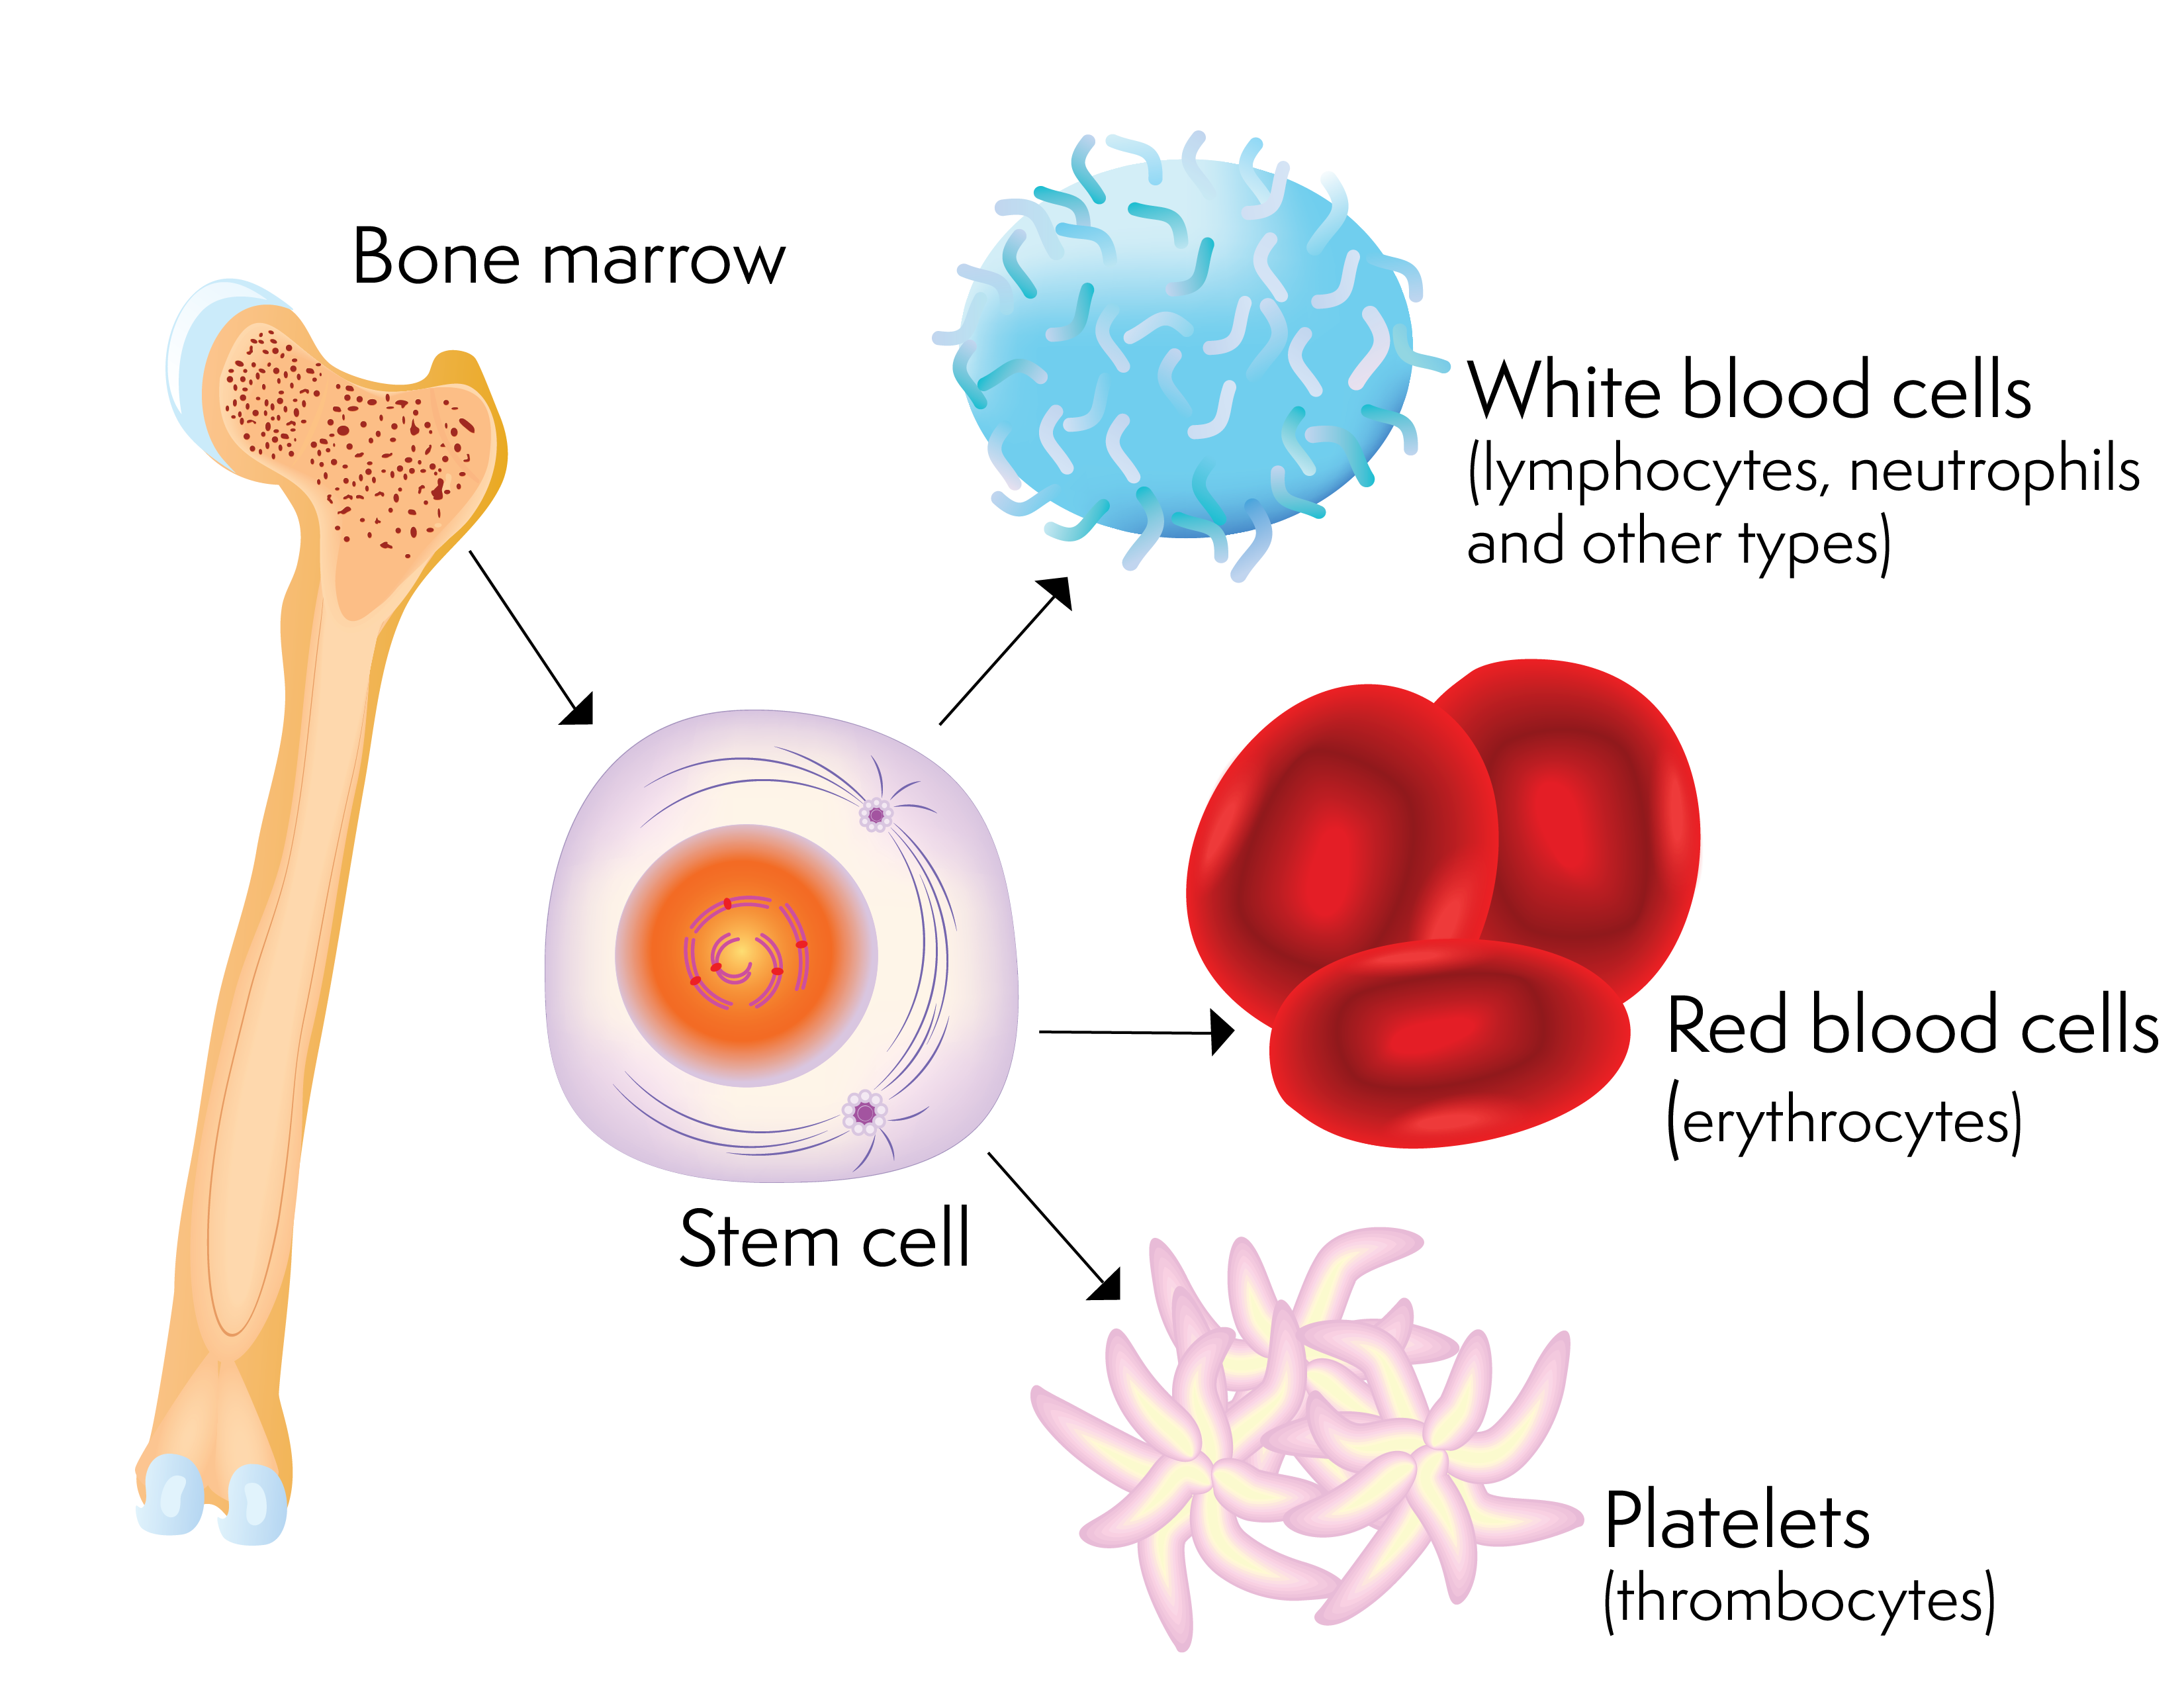 o celulă stem și celulele sanguine pe care le poate produce